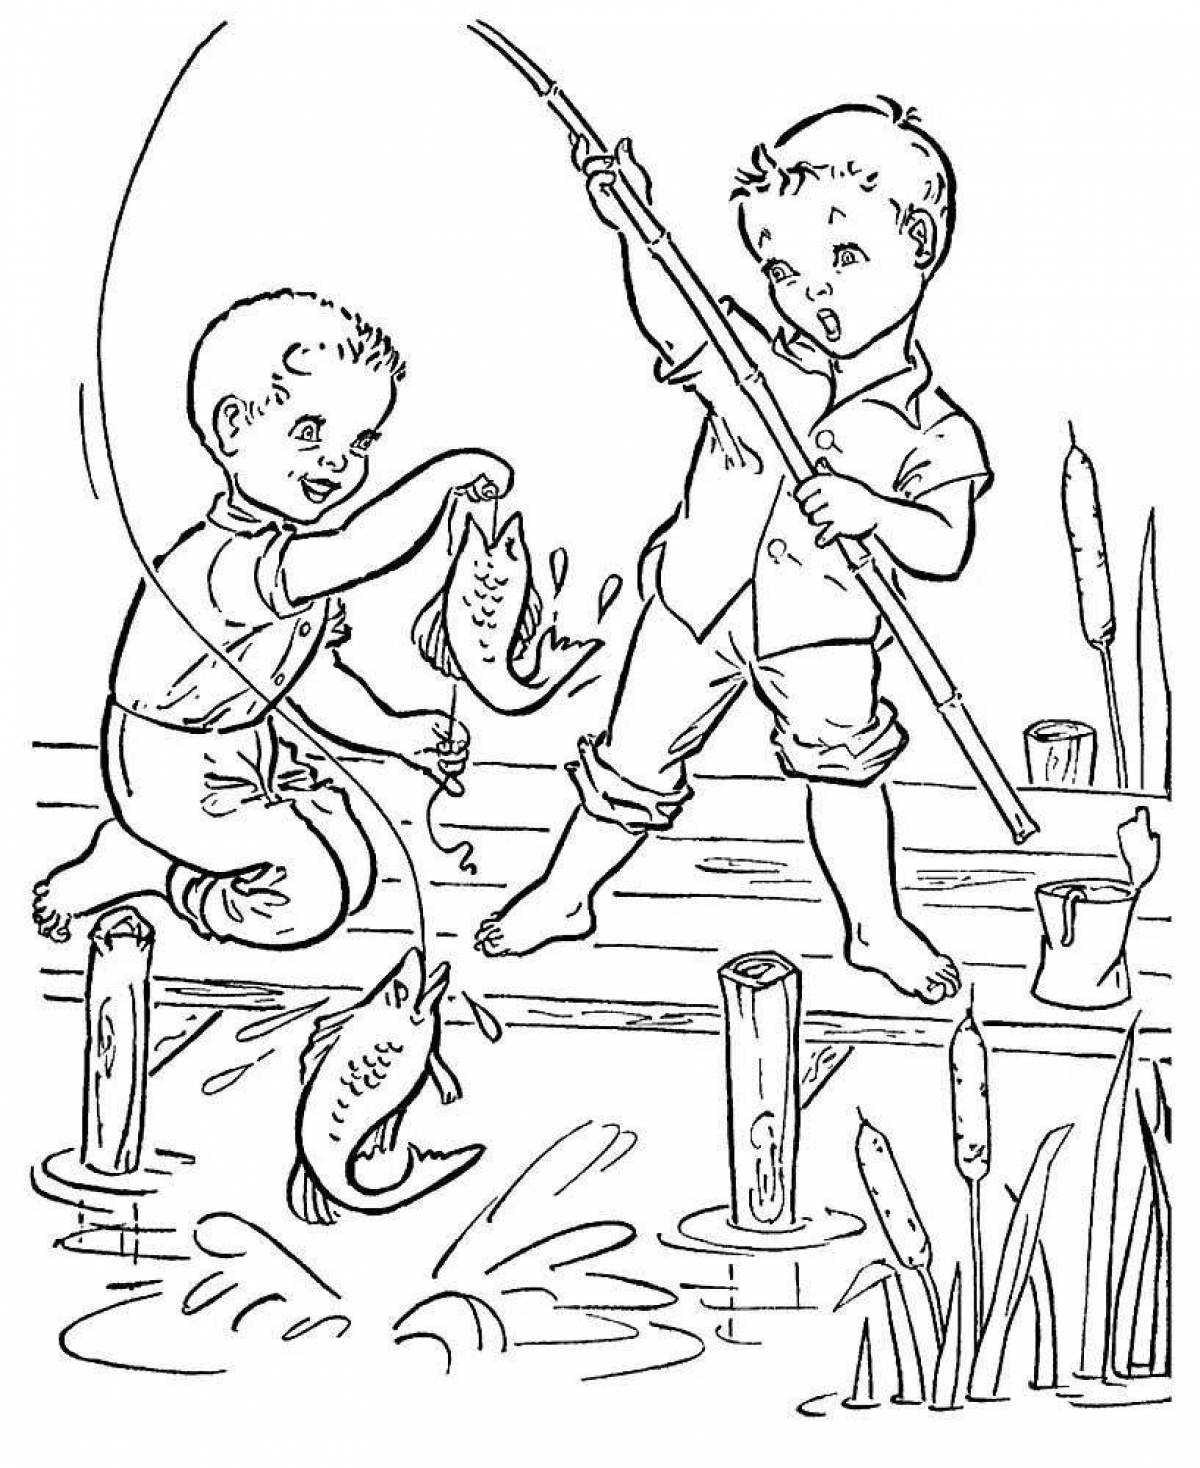 Раскраска для маленьких мальчиков про рыбалку - раскрась картинку!